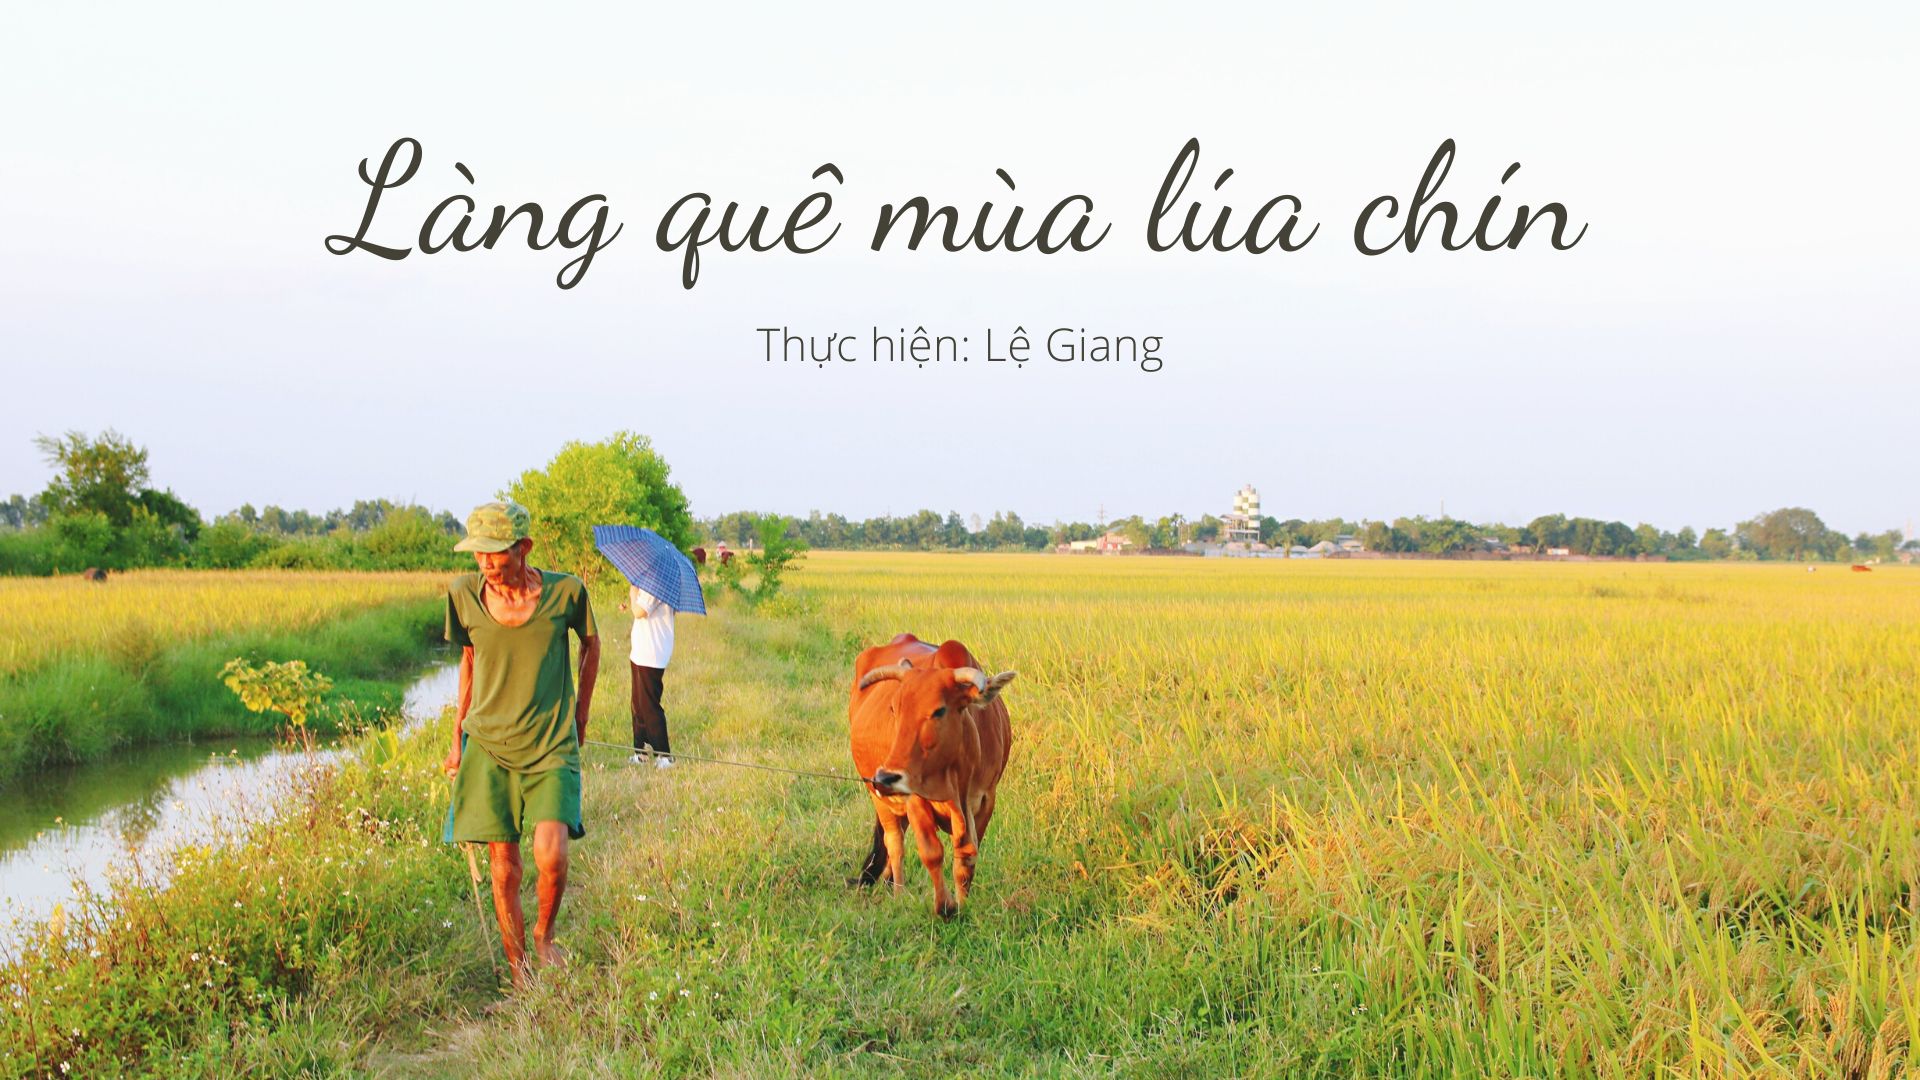 Làng quê tuyệt đẹp trong mùa lúa chín đang chờ bạn khám phá. Đồng lúa quê hương với màu xanh đầy nắng vàng, những vòng tròn của trái đất, và những cánh đồng đầy hoa hướng dương. Hãy tìm hiểu về nét đẹp tuyệt vời của nông thôn và cuộc sống nông dân Việt Nam.